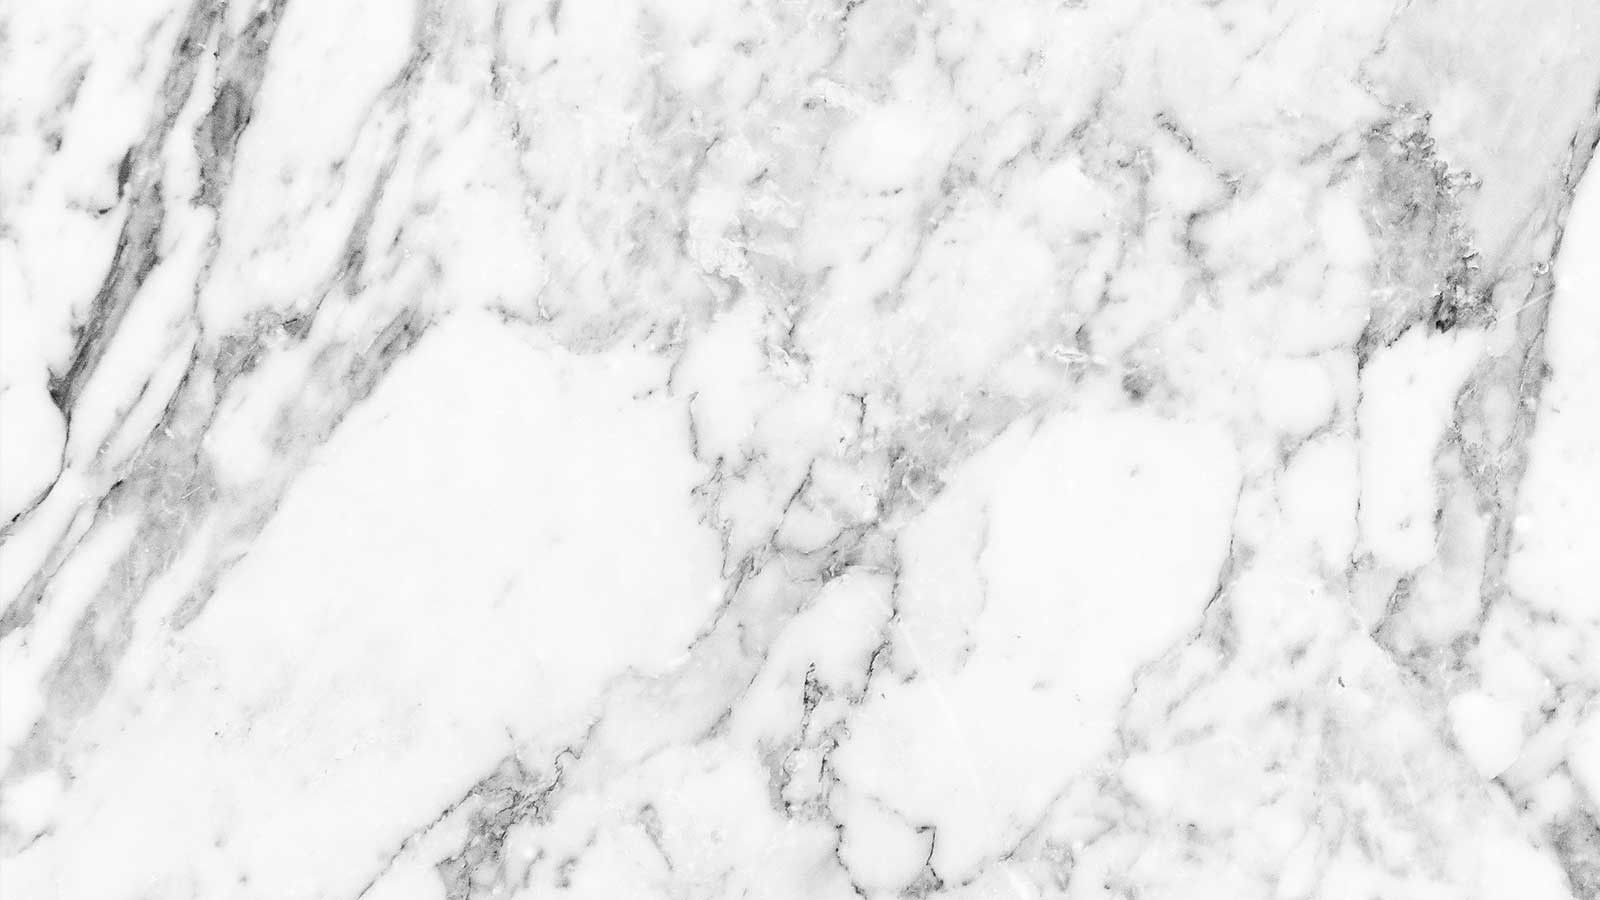 Hình nền 4K marble sẽ mang lại cho bạn những cảm xúc thú vị khi trải nghiệm một không gian máy tính hoàn toàn mới lạ. Chắc chắn bạn sẽ không thể rời mắt khỏi màn hình với những chất liệu và hoa văn đá hoa cương tuyệt đẹp.